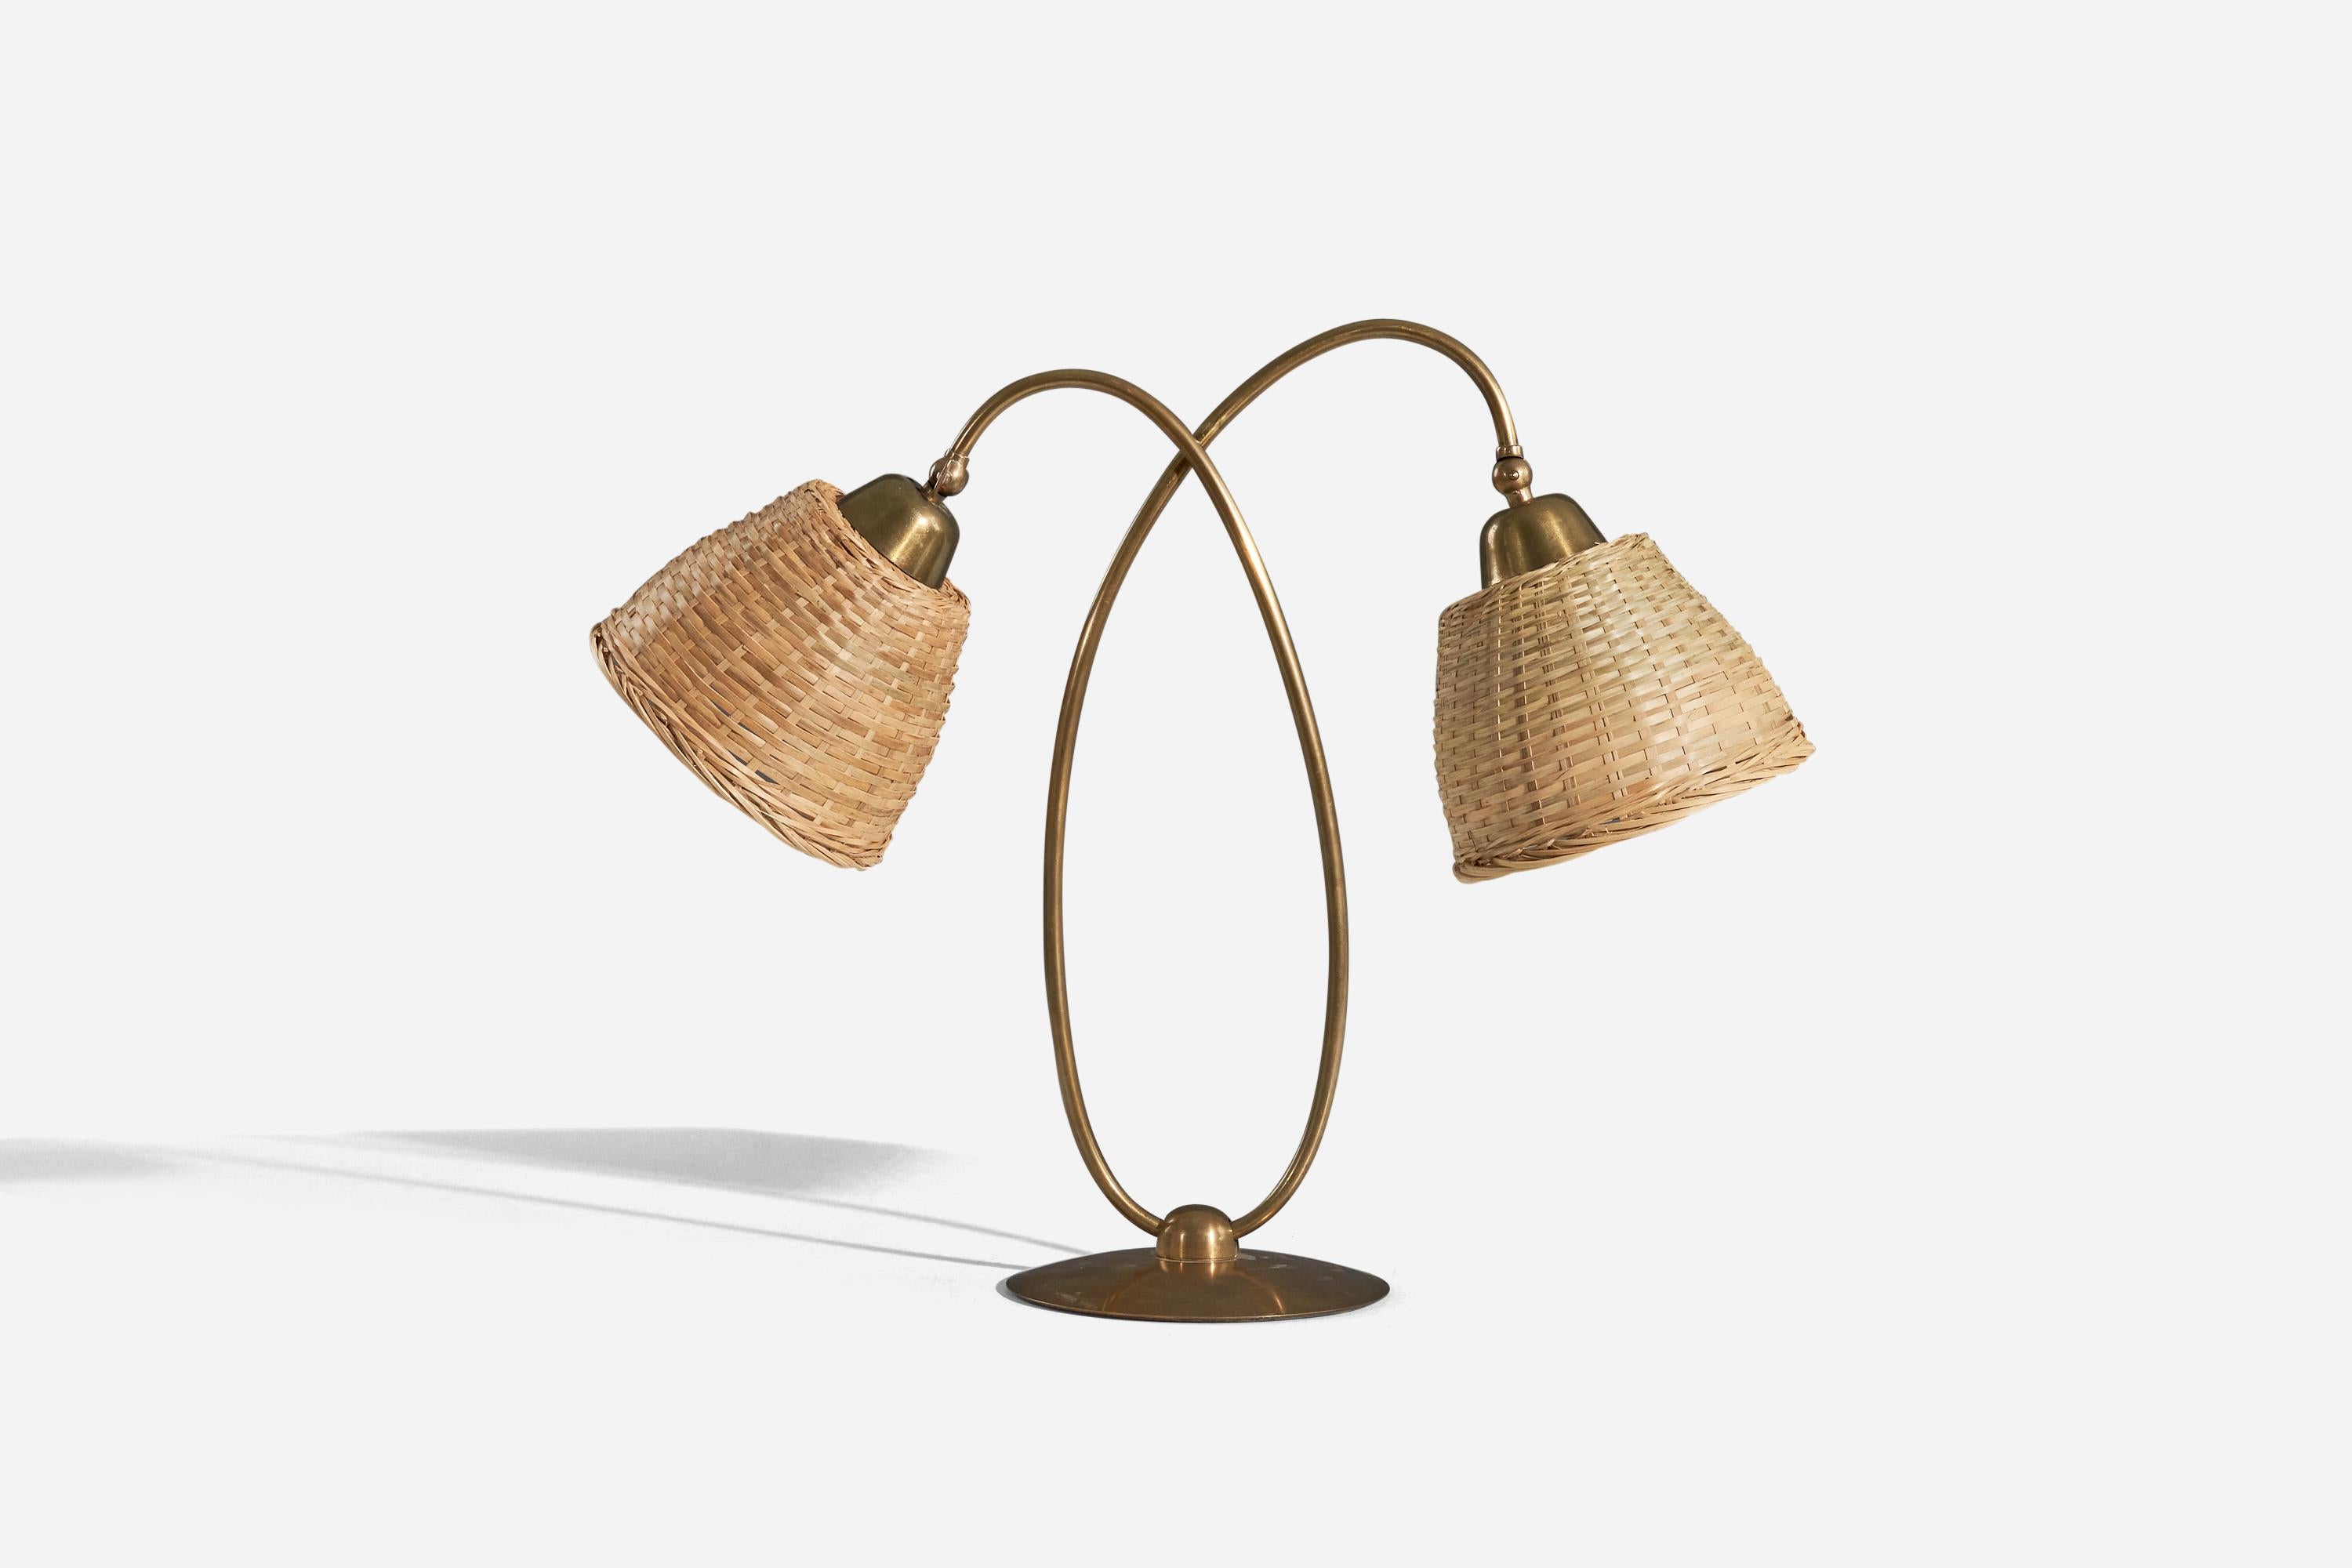 Lampe de table en laiton et rotin conçue et produite par Svend Aage Holm Sørensen, Danemark, années 1950.

Vendu avec des abat-jour.
Les dimensions indiquées se réfèrent à la lampe avec les abat-jour.